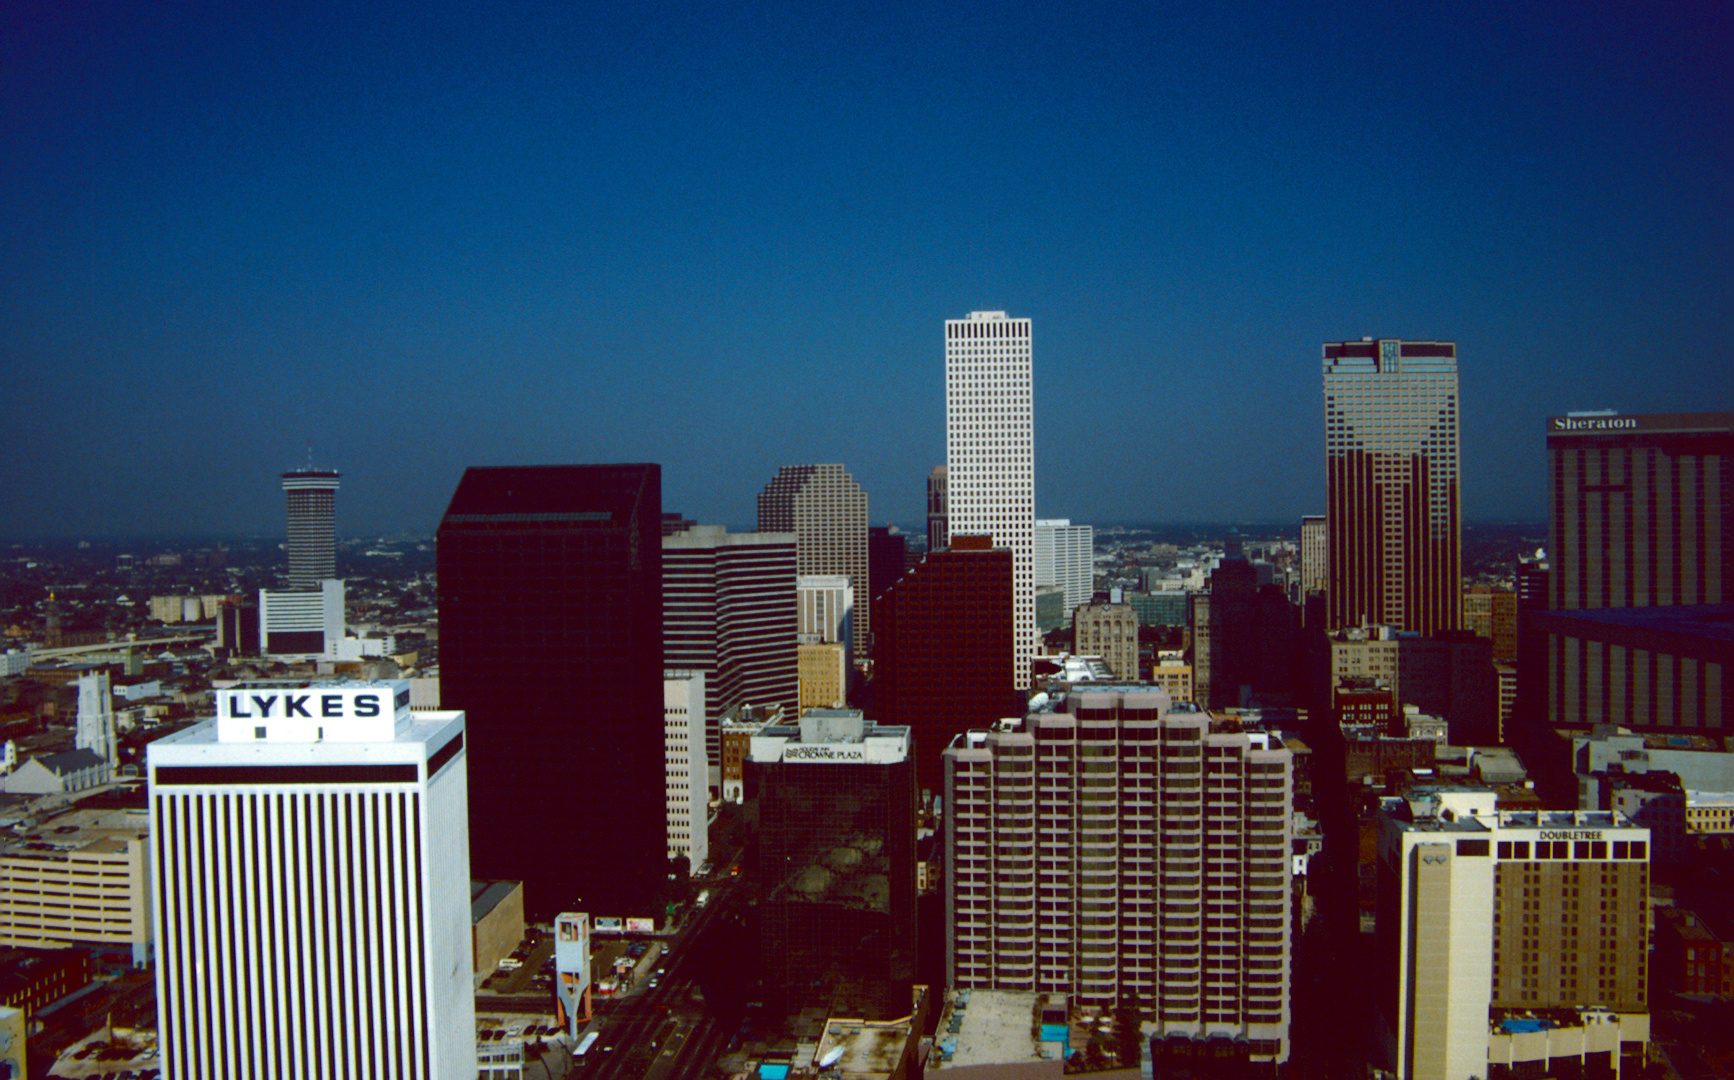 New Orleans, LA - 1988